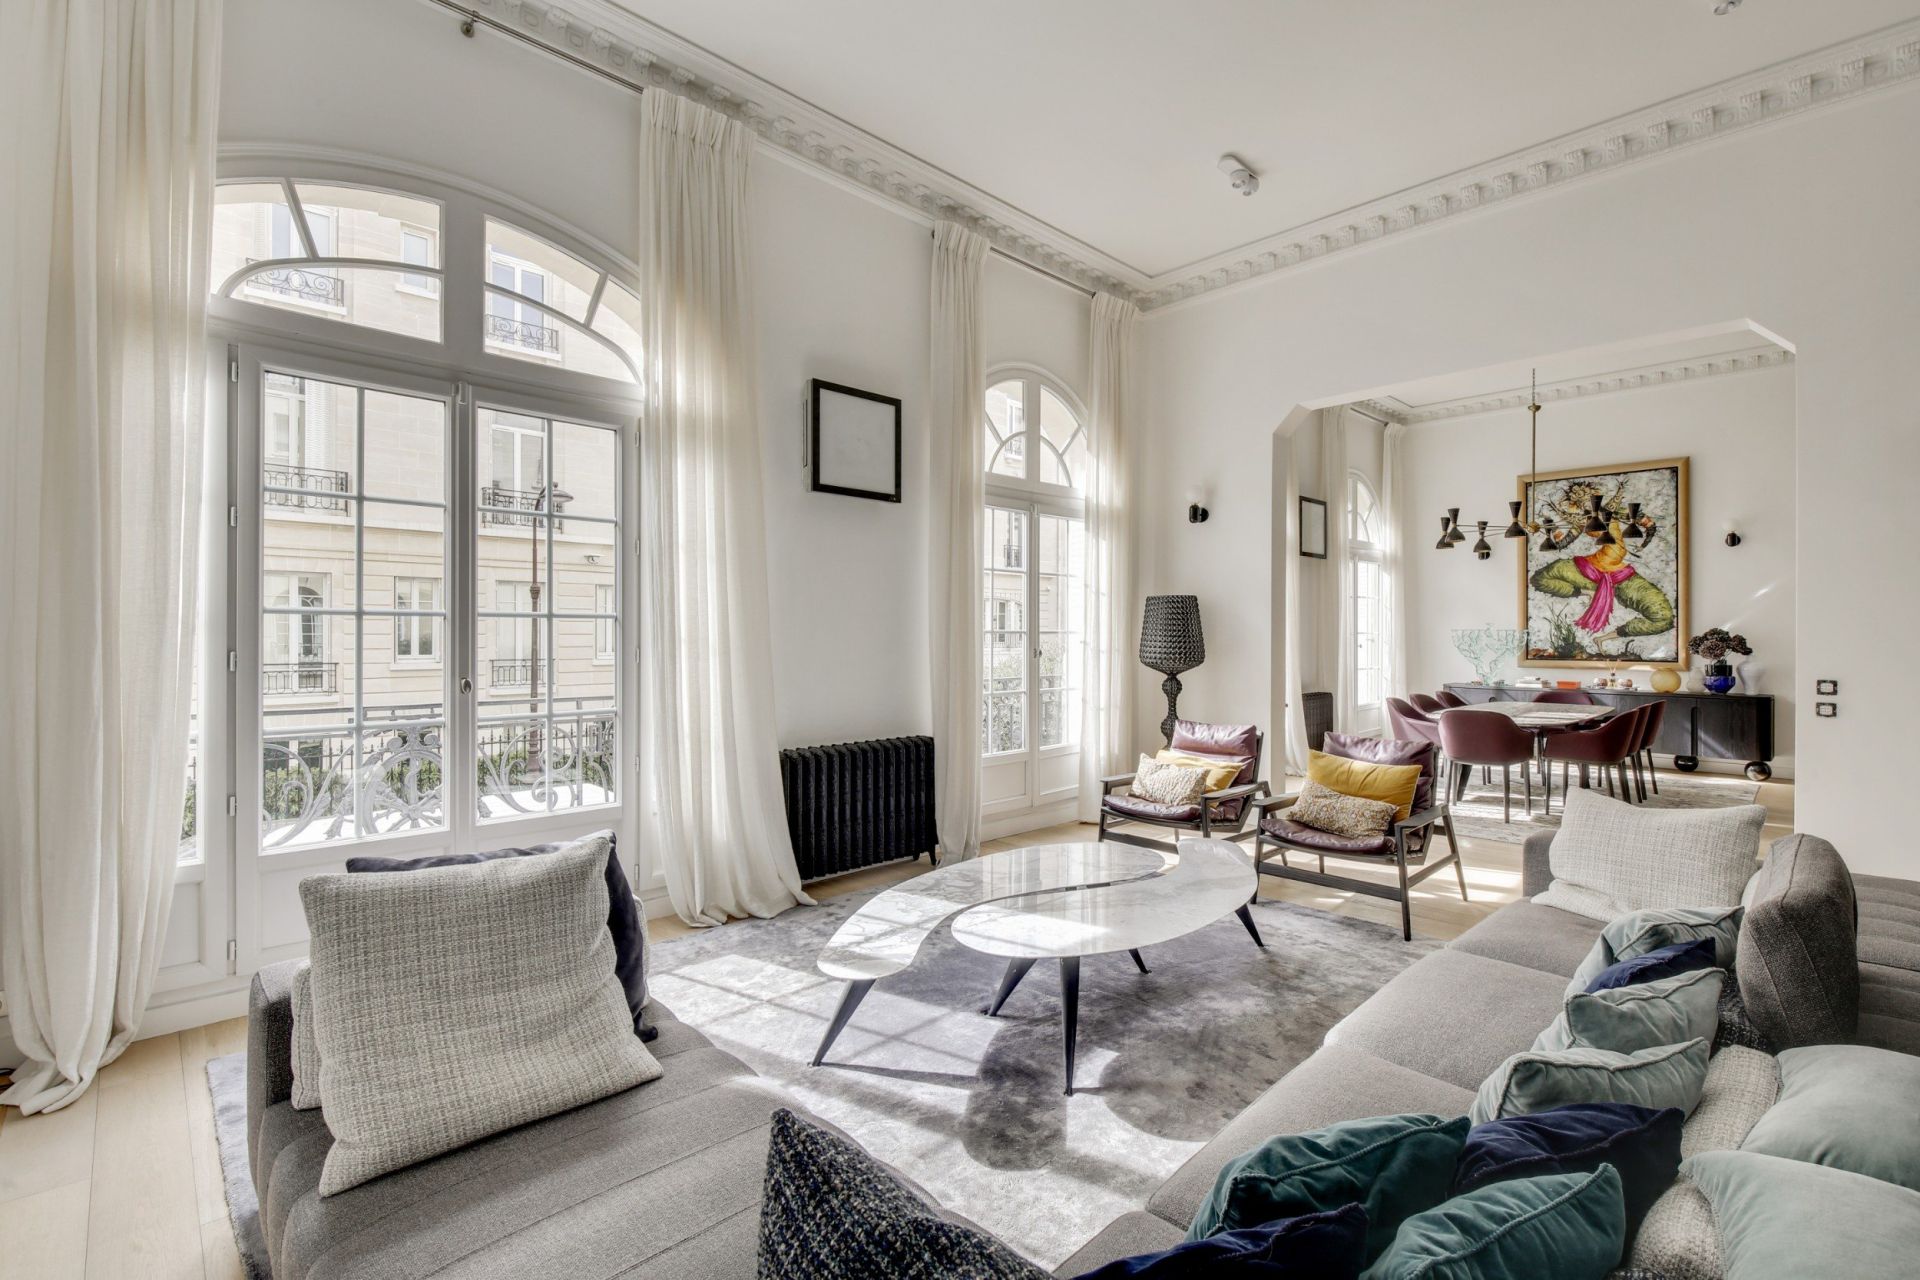 Sale Luxury apartment Paris 16 7 rooms 333.83 m² - Paris Ouest Sotheby